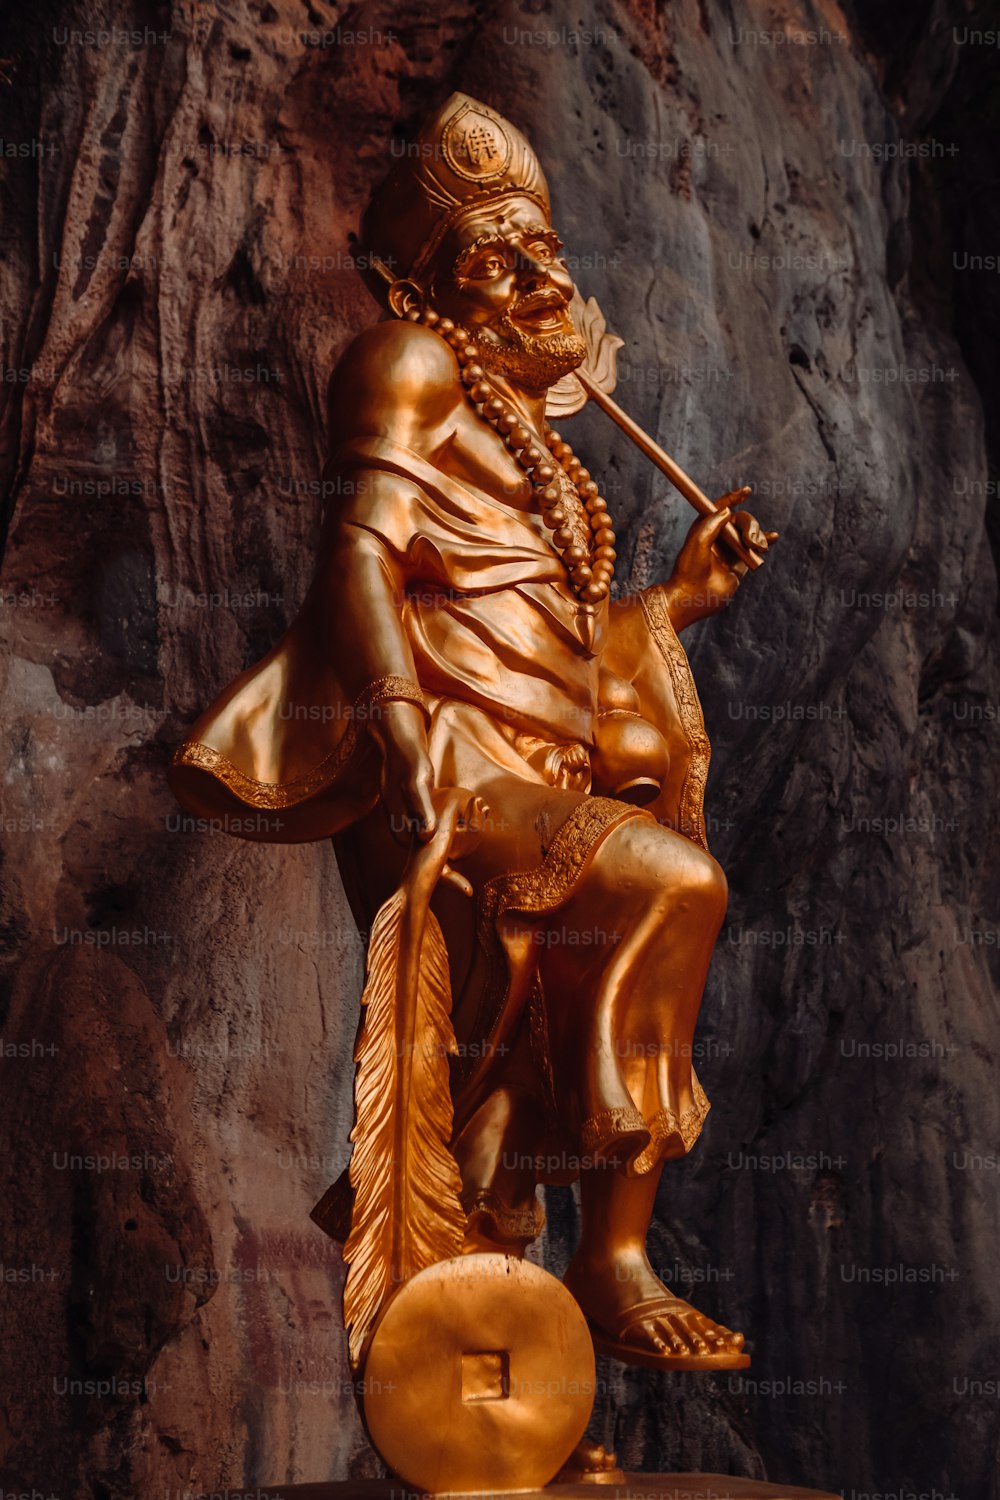 eine Statue eines Mannes mit einer Pfeife in der Hand